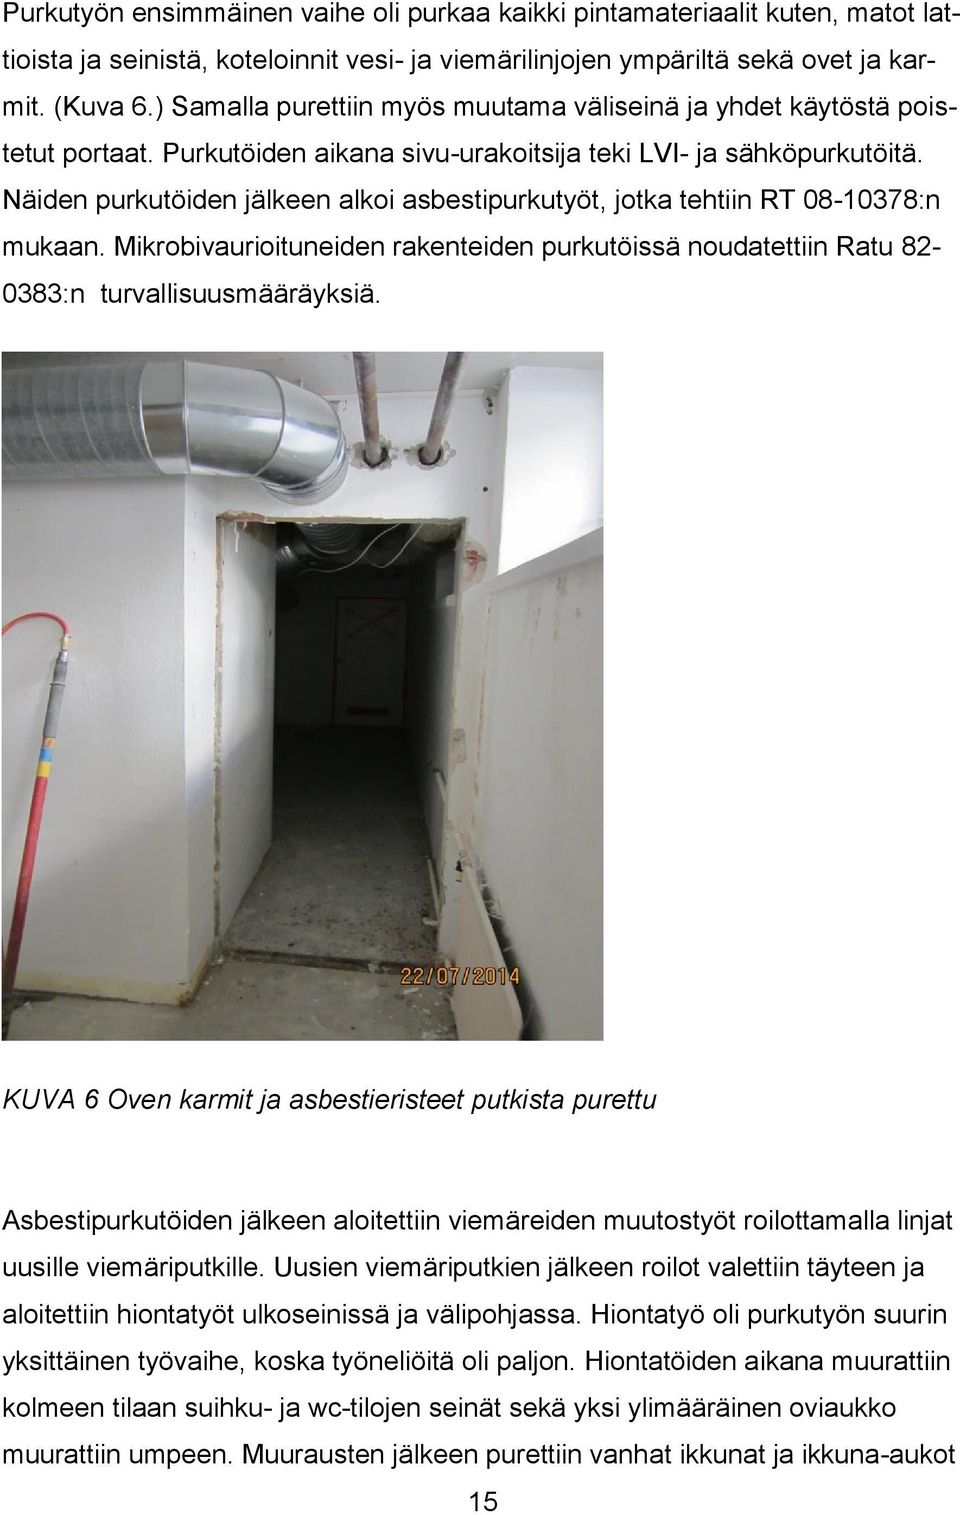 Näiden purkutöiden jälkeen alkoi asbestipurkutyöt, jotka tehtiin RT 08-10378:n mukaan. Mikrobivaurioituneiden rakenteiden purkutöissä noudatettiin Ratu 82-0383:n turvallisuusmääräyksiä.